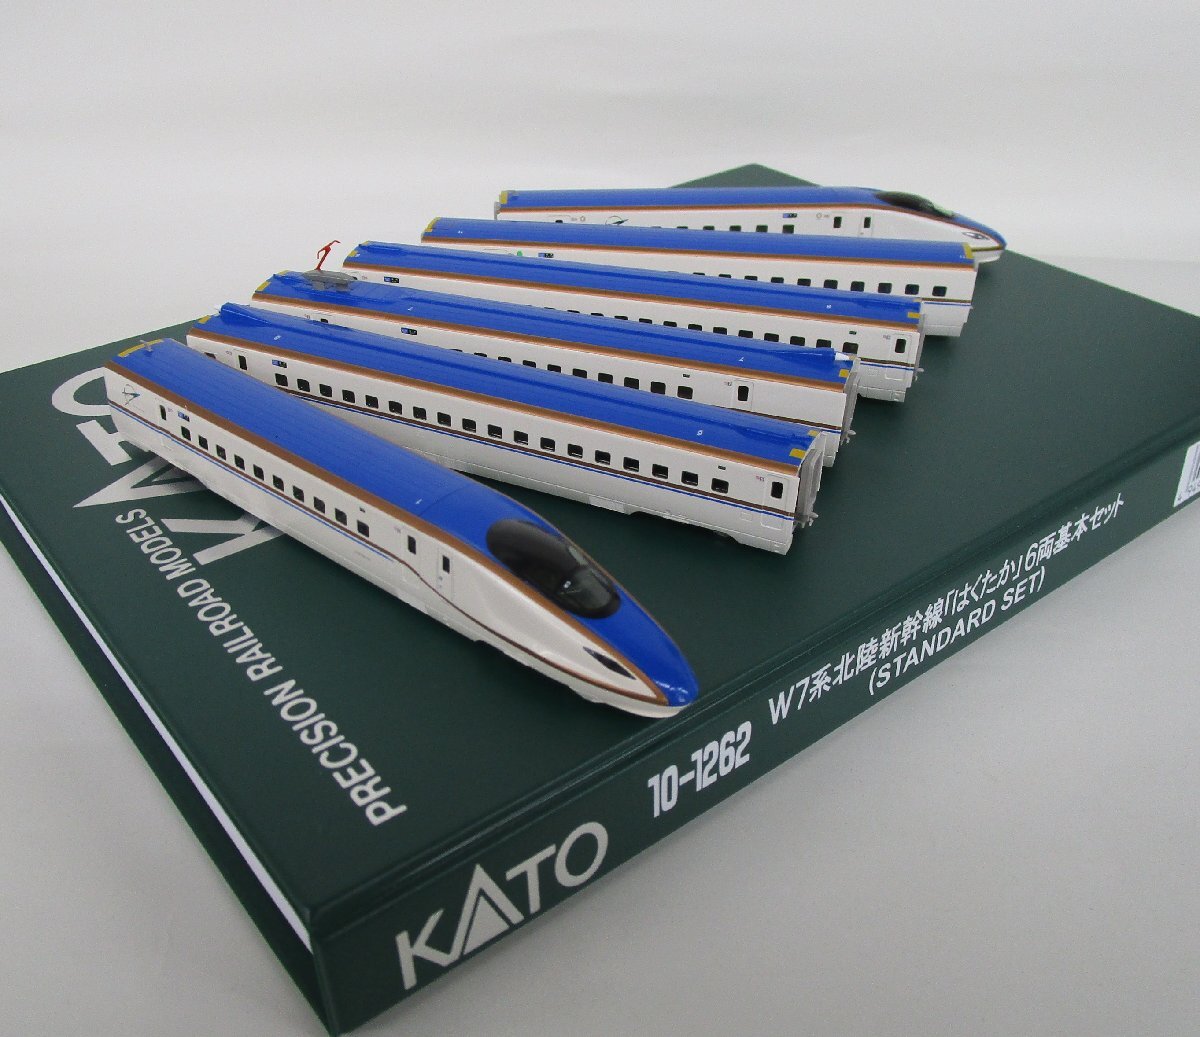 KATO 10-1262 W7系北陸新幹線「はくたか」6両基本セット【C】agn032901の画像1